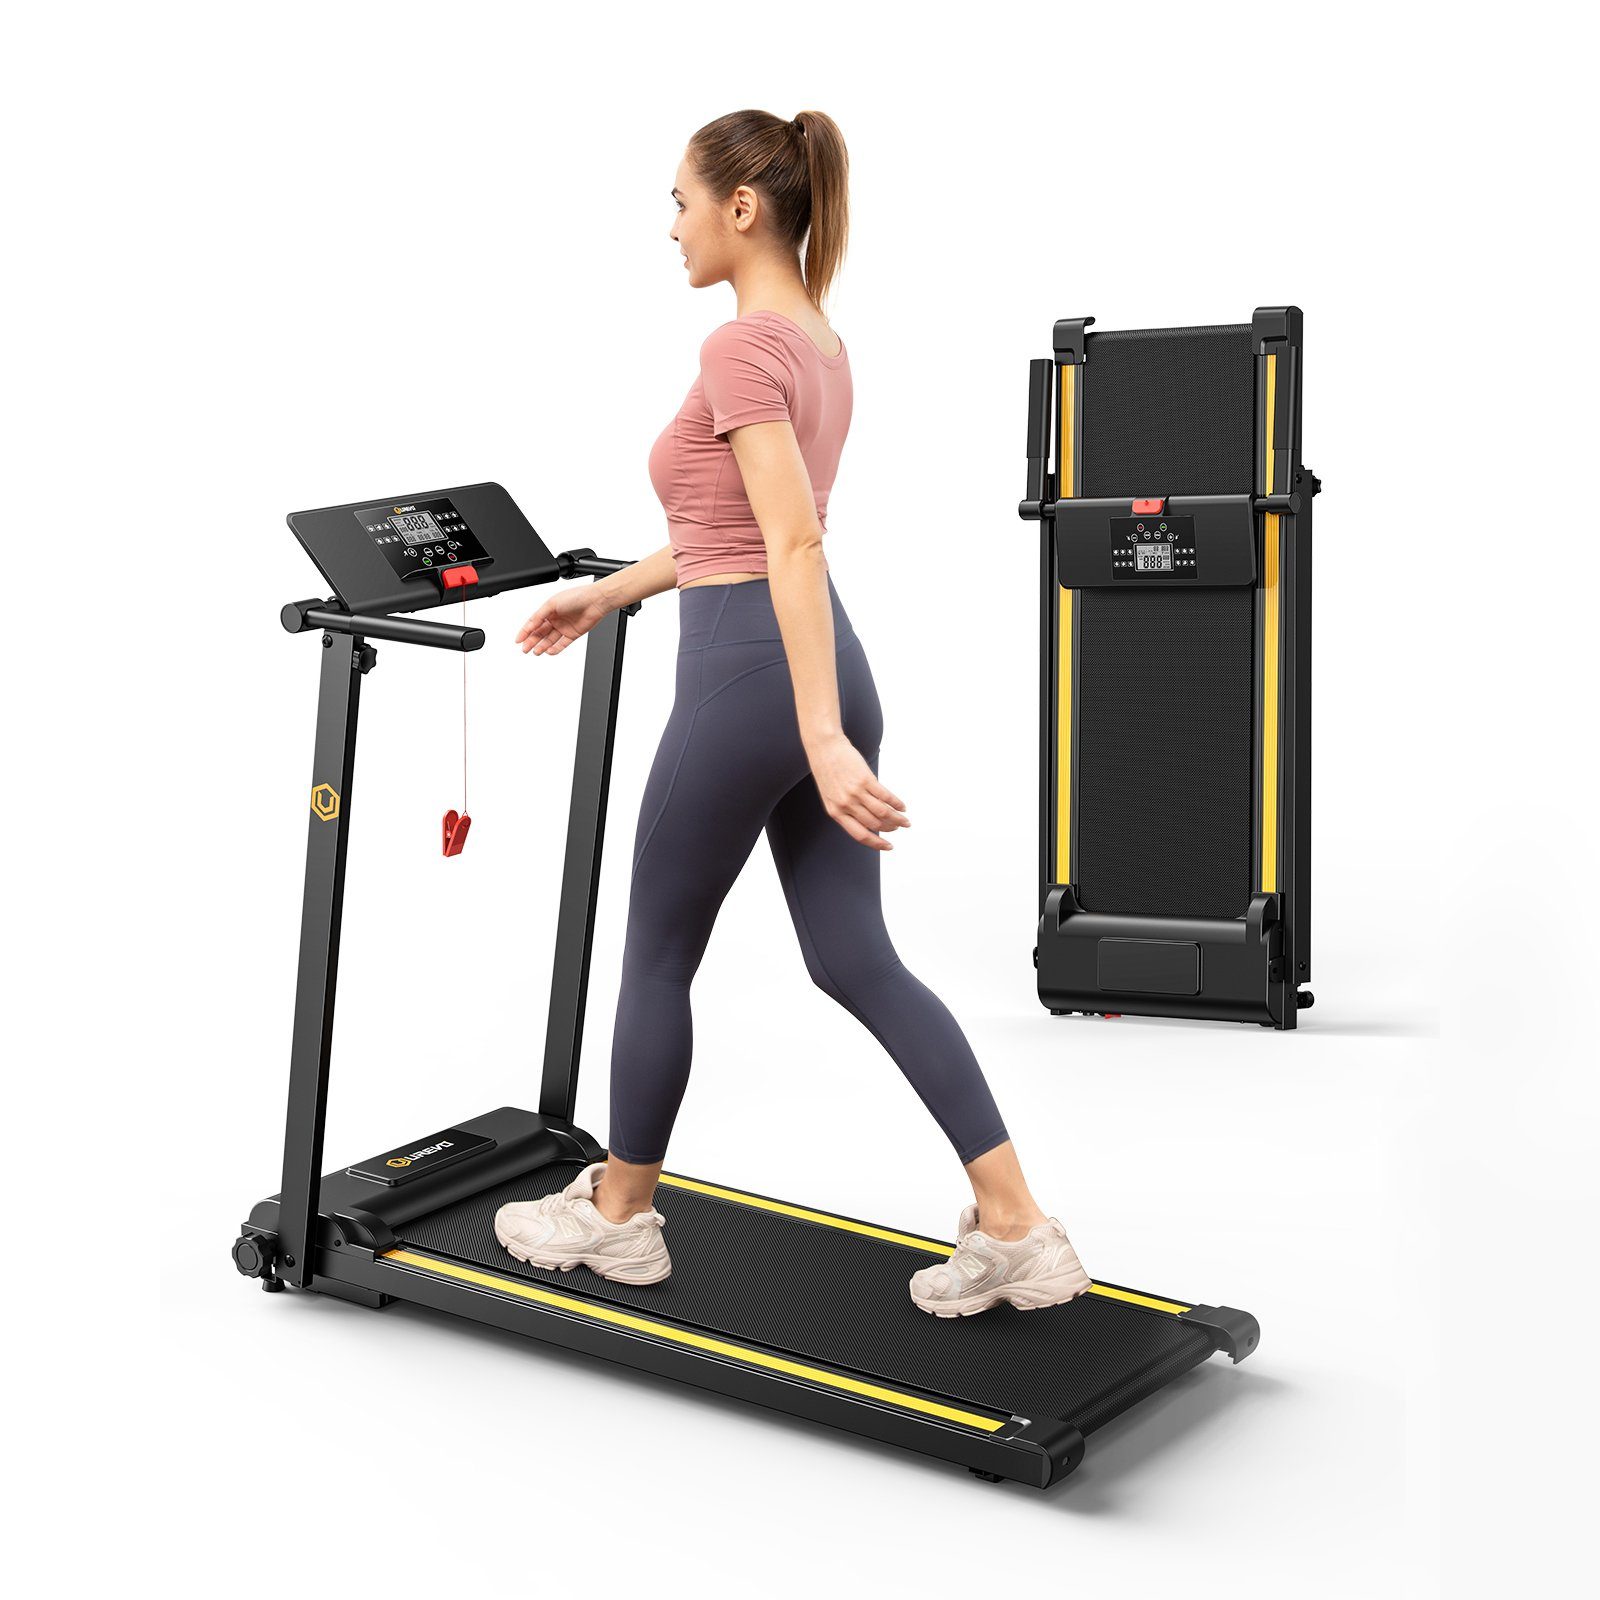 REDOM Laufband Profi Elektrisches Laufband Fitness Treadmill Sports Zuhause 1-10 km/h (Trainingspfade klappbar und kompakt verstaubar, Halterung für Handy und Pad, mit 12 Programs, UREVO), Walking pad für Zu hause